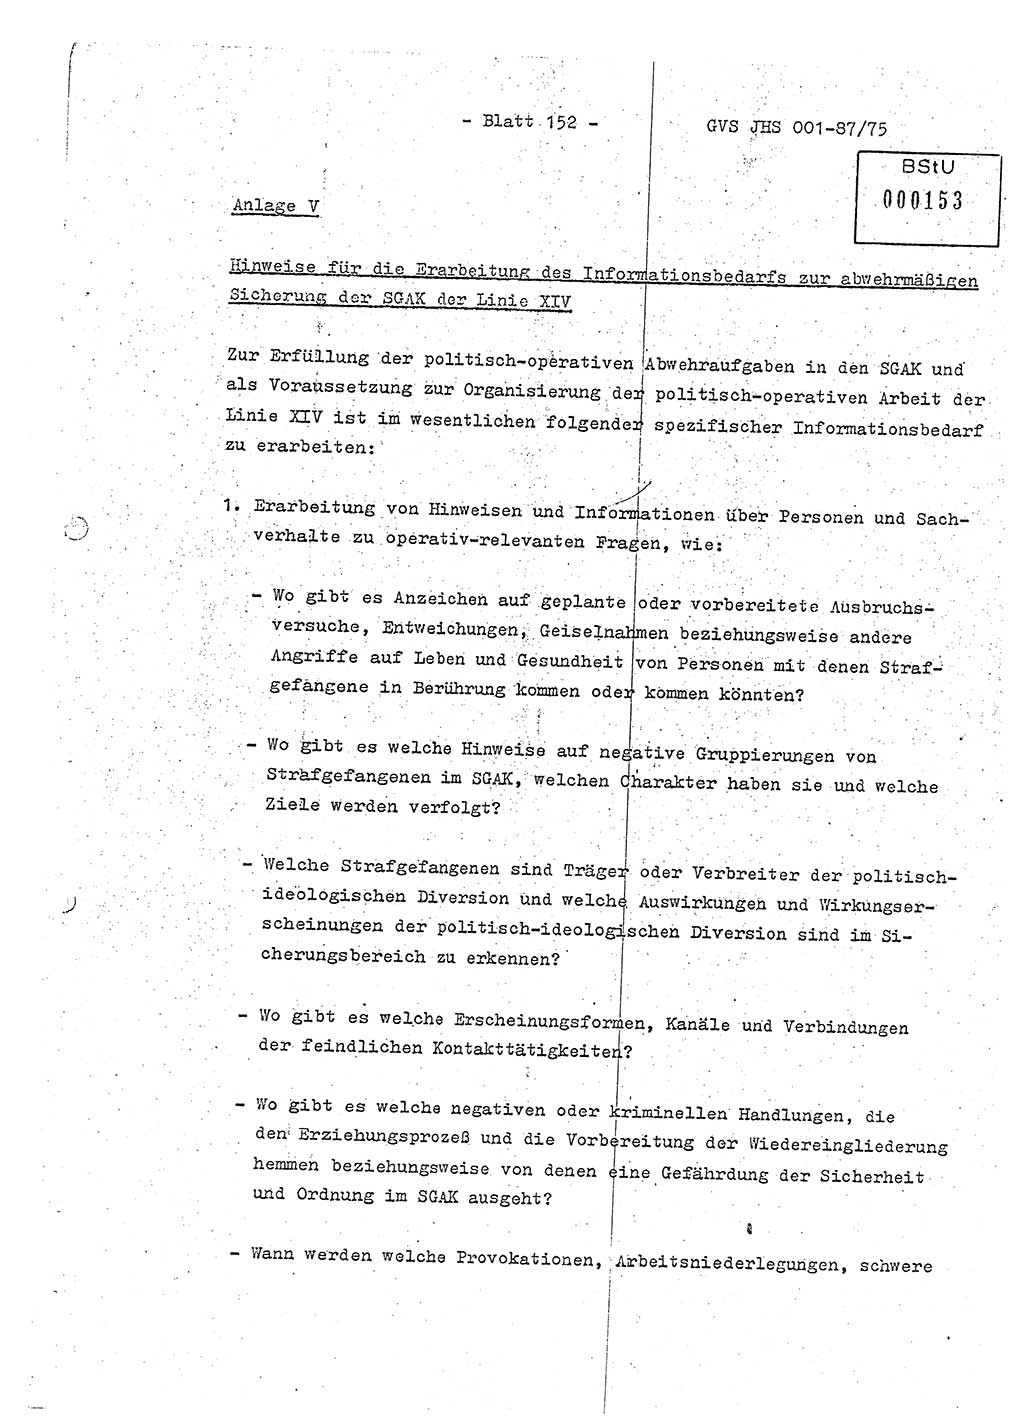 Diplomarbeit Hauptmann Volkmar Heinz (Abt. ⅩⅣ), Oberleutnant Lothar Rüdiger (BV Lpz. Abt. Ⅺ), Ministerium für Staatssicherheit (MfS) [Deutsche Demokratische Republik (DDR)], Juristische Hochschule (JHS), Geheime Verschlußsache (GVS) o001-87/75, Potsdam 1975, Seite 152 (Dipl.-Arb. MfS DDR JHS GVS o001-87/75 1975, S. 152)